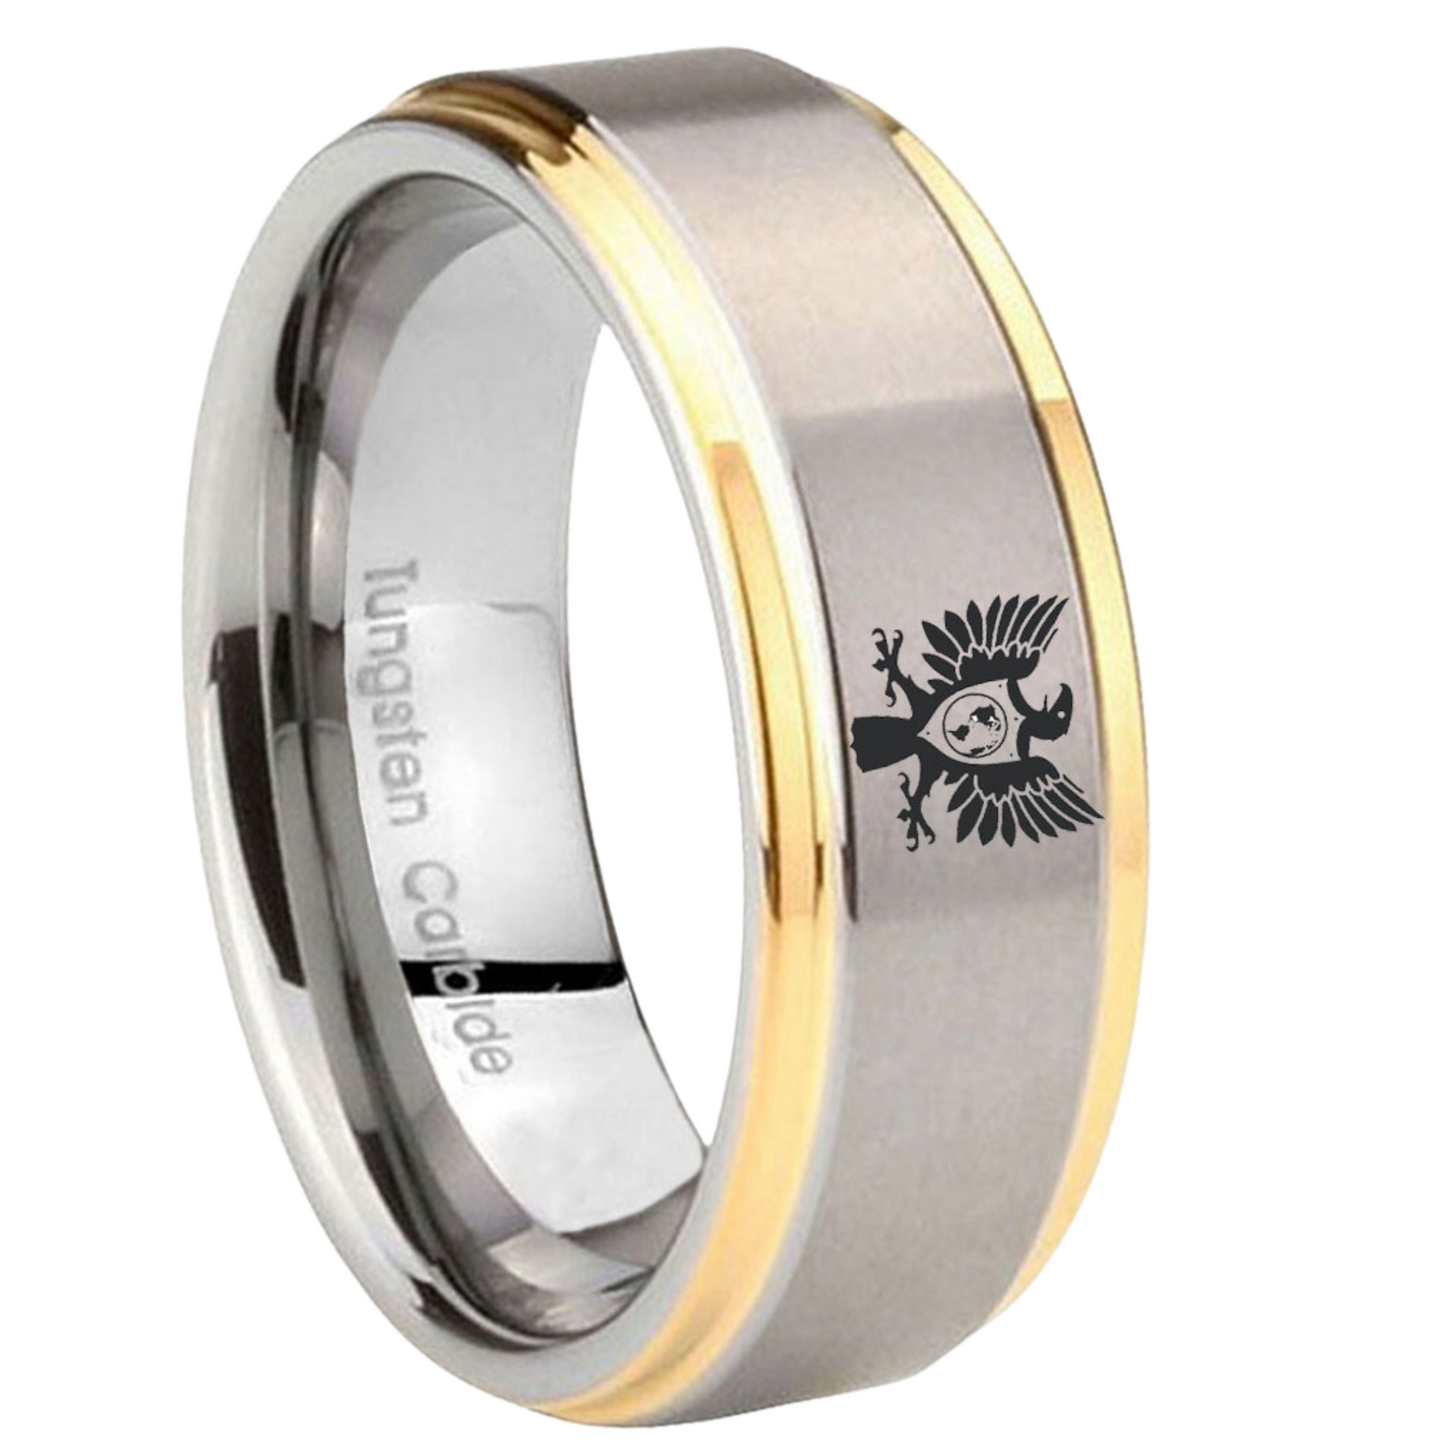 Eagle - Gold/Silver Tungsten Carbide Ring